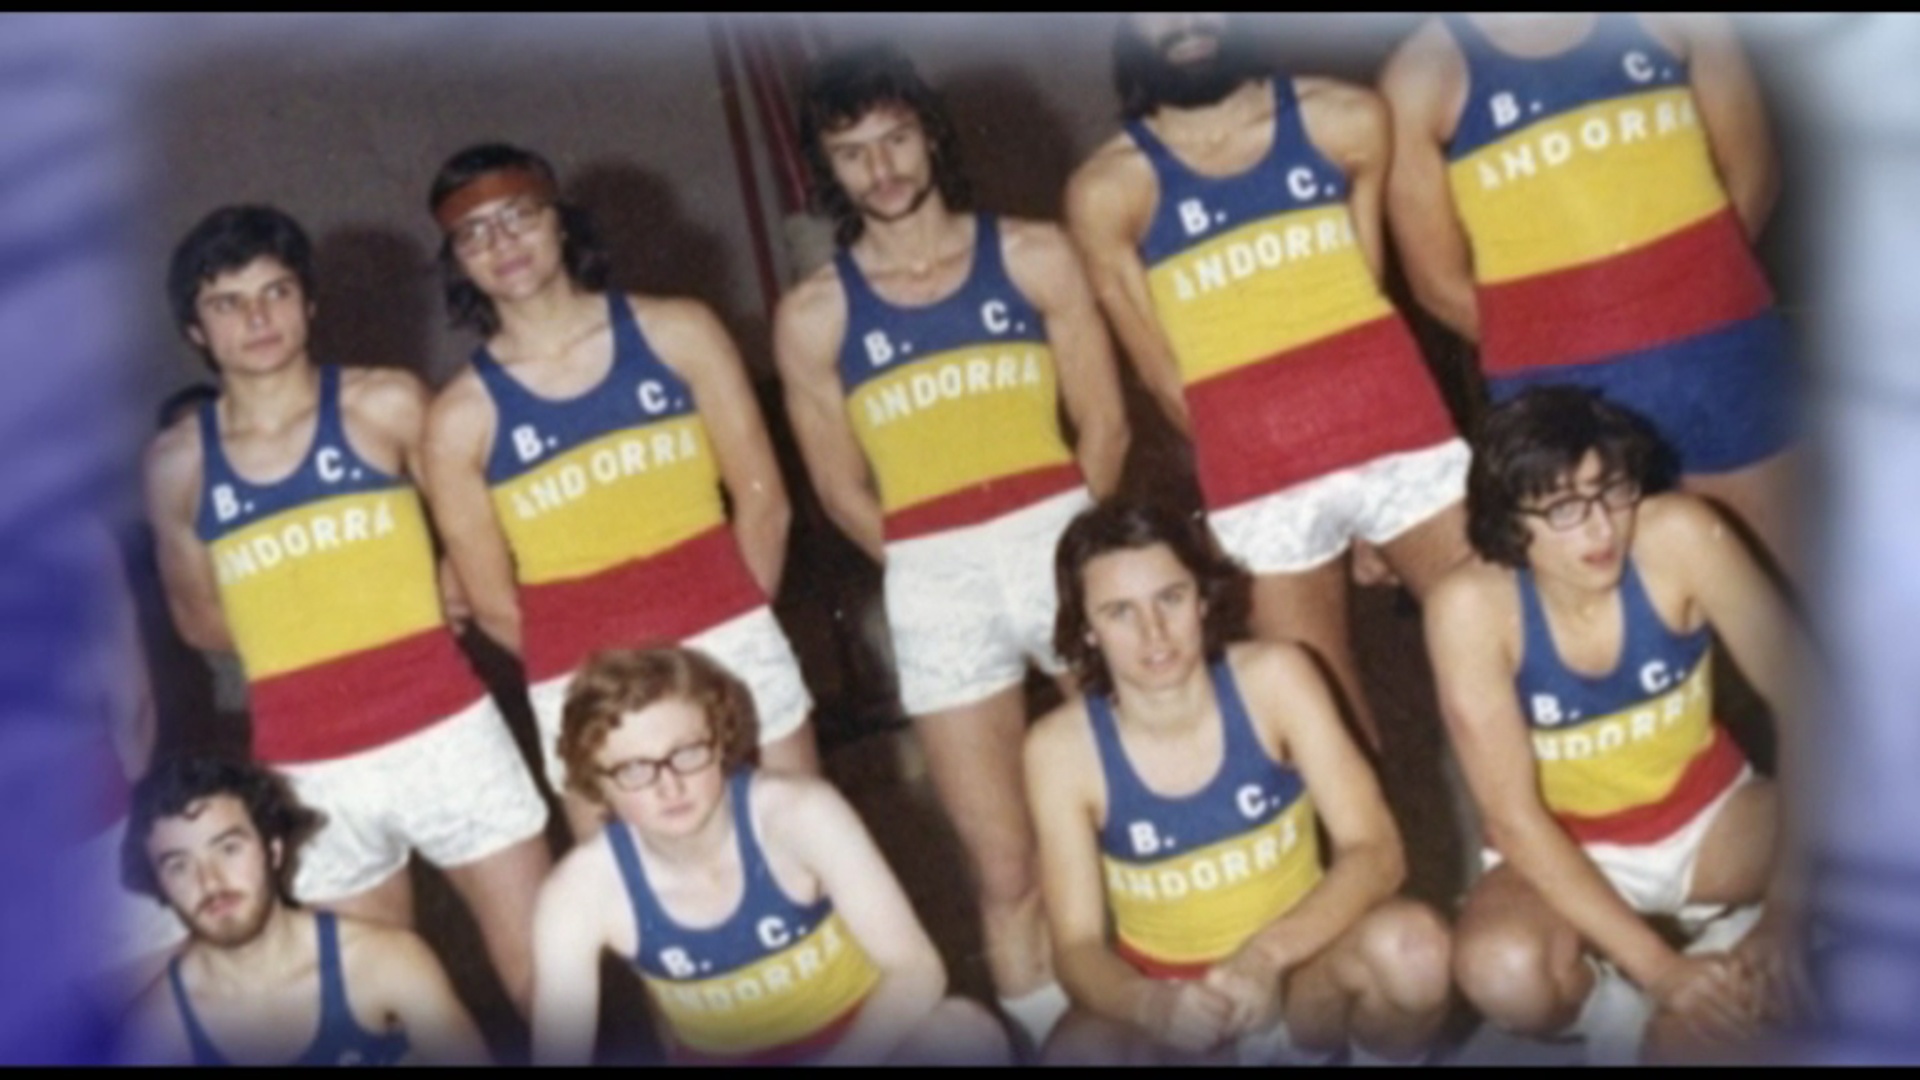 Memòries d'arxiu - Bàsquet Club Andorra